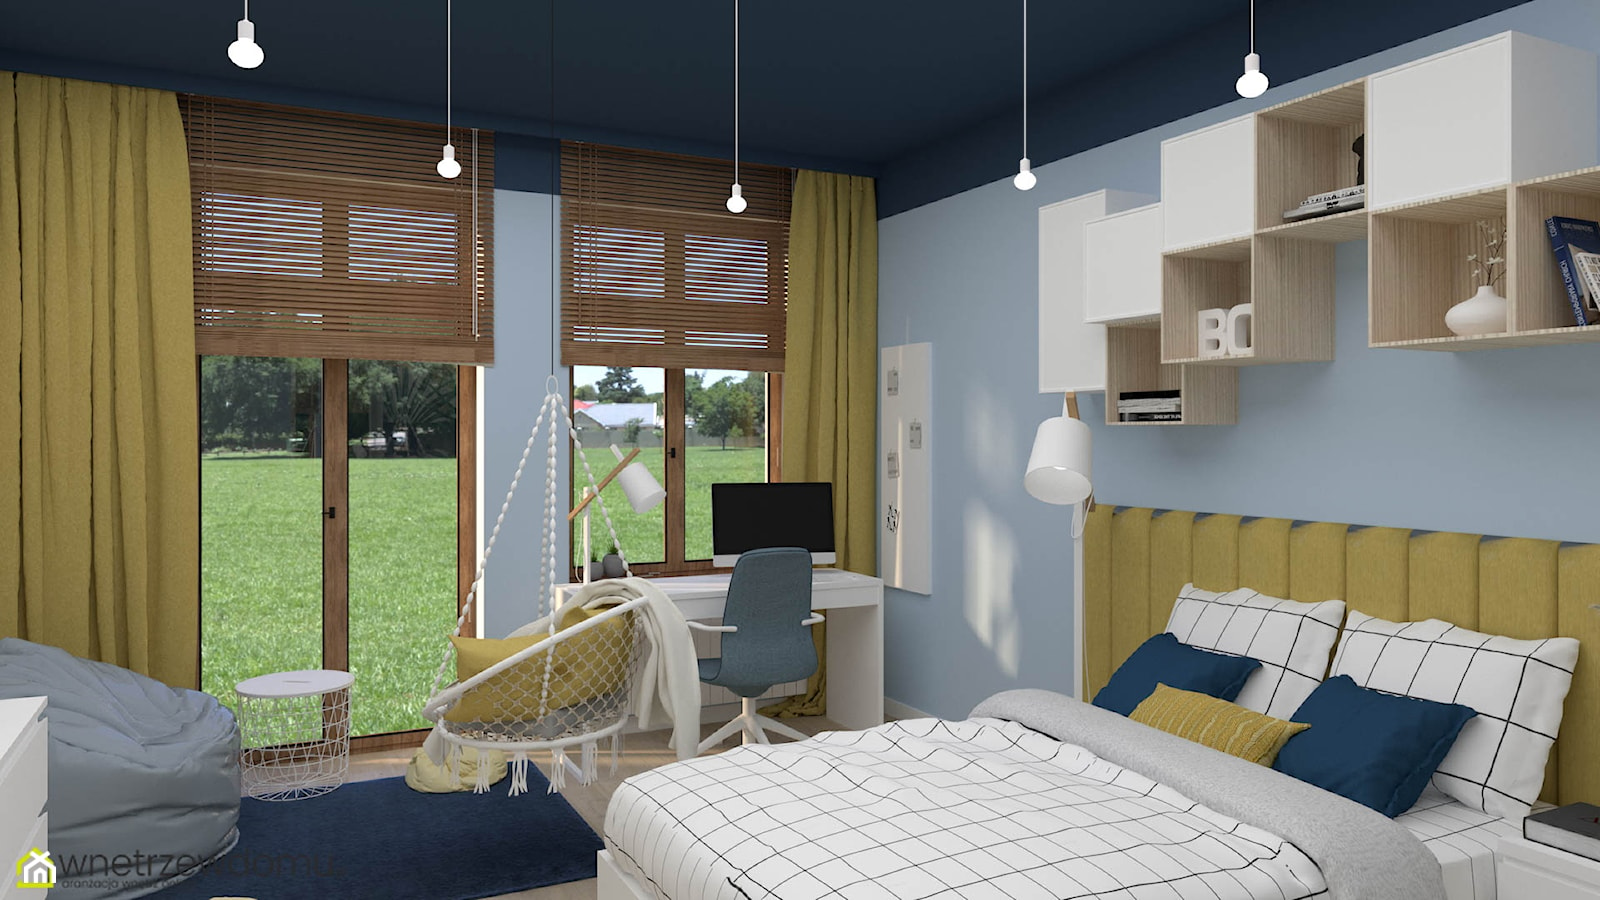 Bidżetowa wersja pokoju dla nastolatki uwielbiającej kolor niebieski - zdjęcie od wnetrzewdomu - Homebook